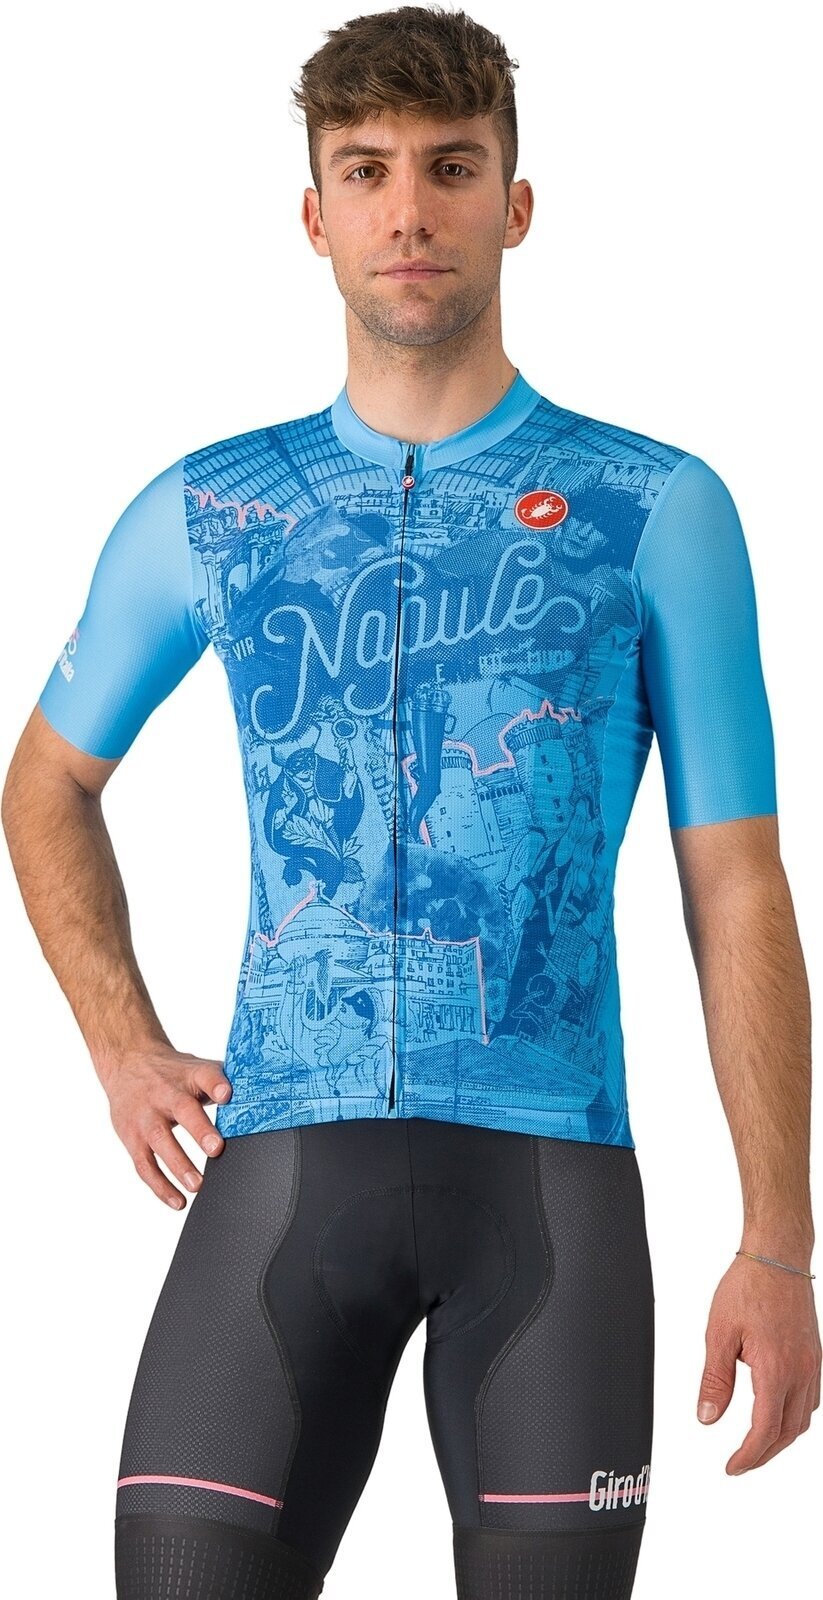 Cycling jersey Castelli Giro107 Napoli Azzurro Napoli L